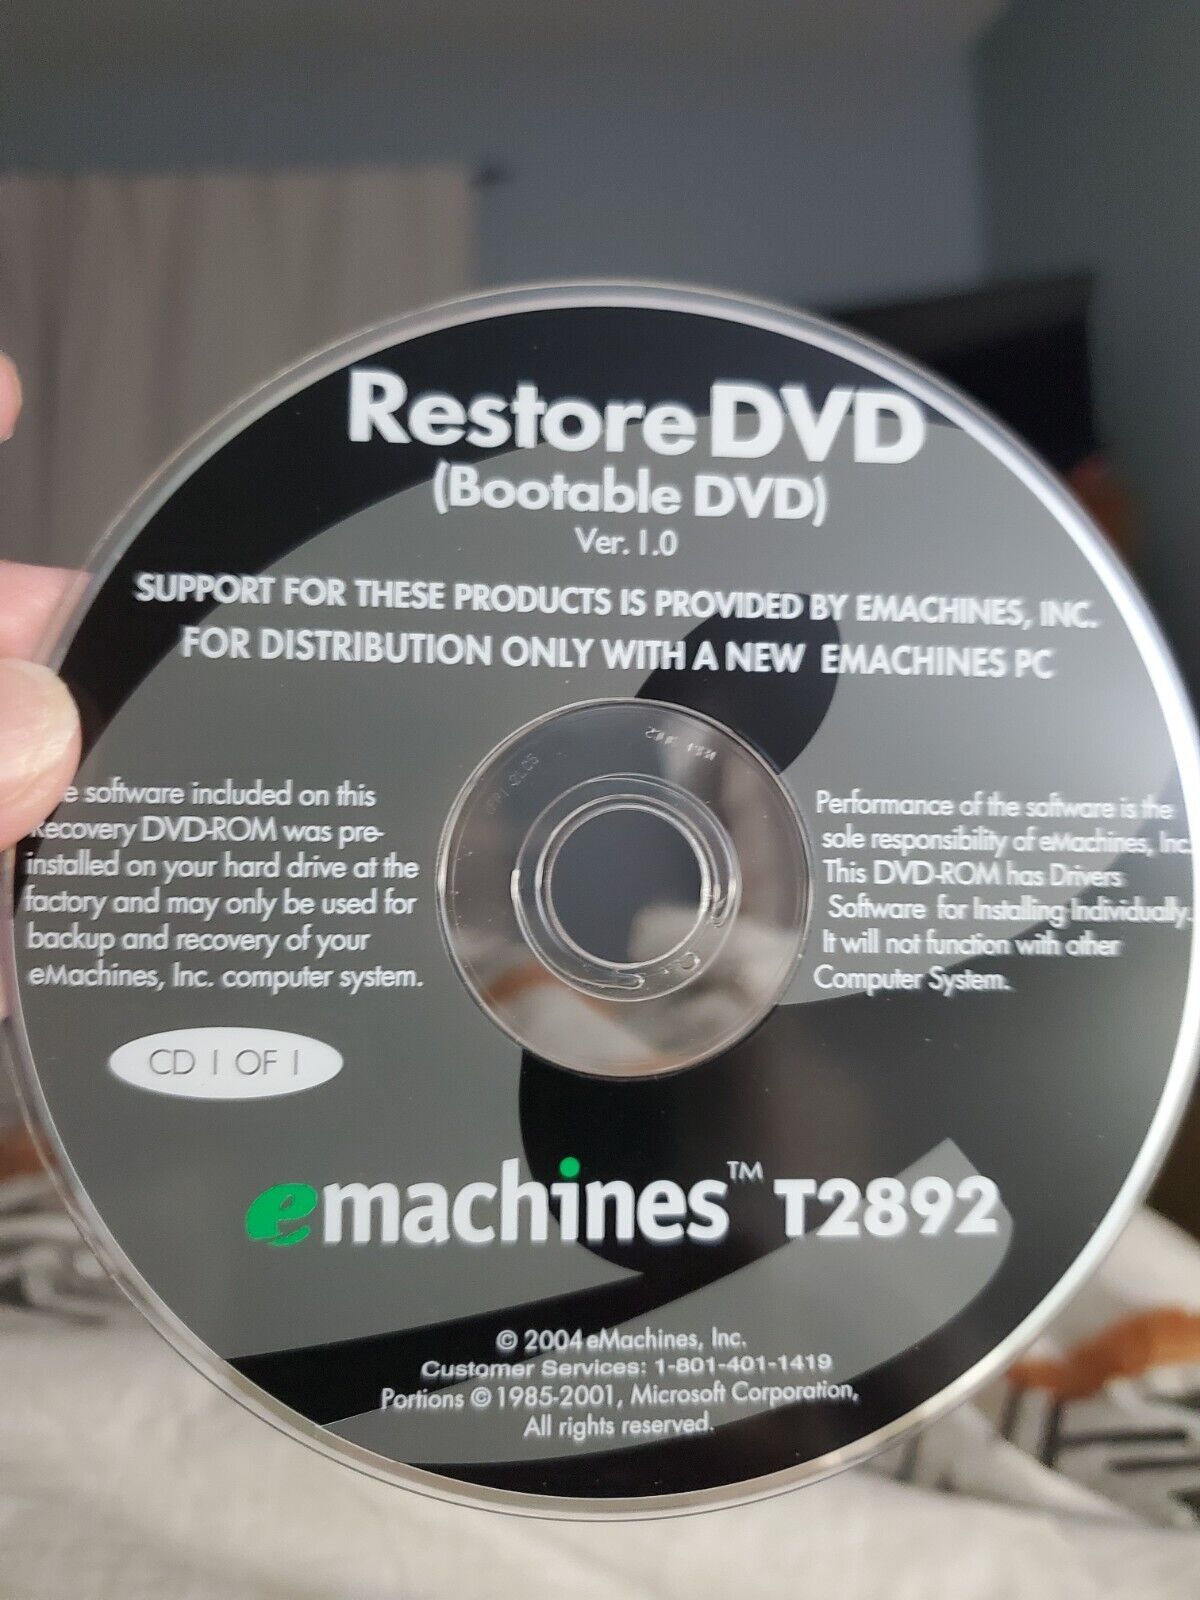 eMachines Restore DVD Version 1.0 T2892